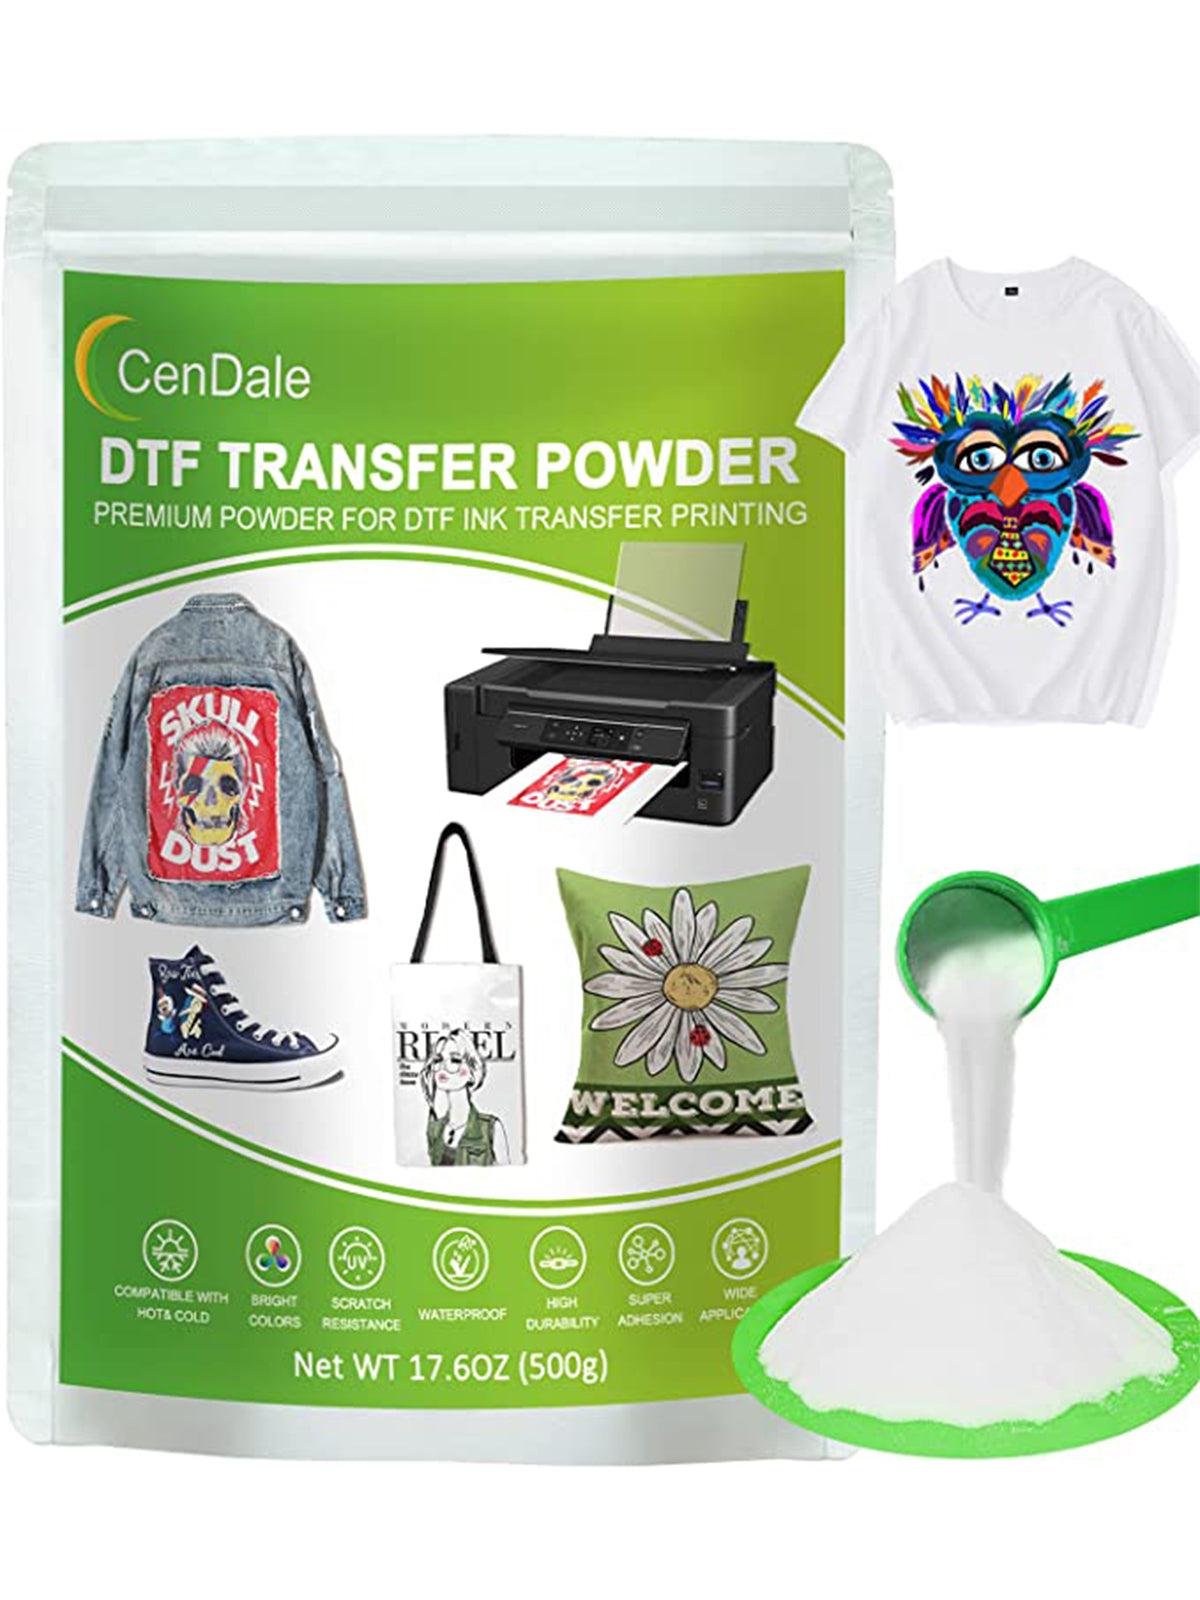 DTF Transfer Medium Powder  High-quality powder for transferring